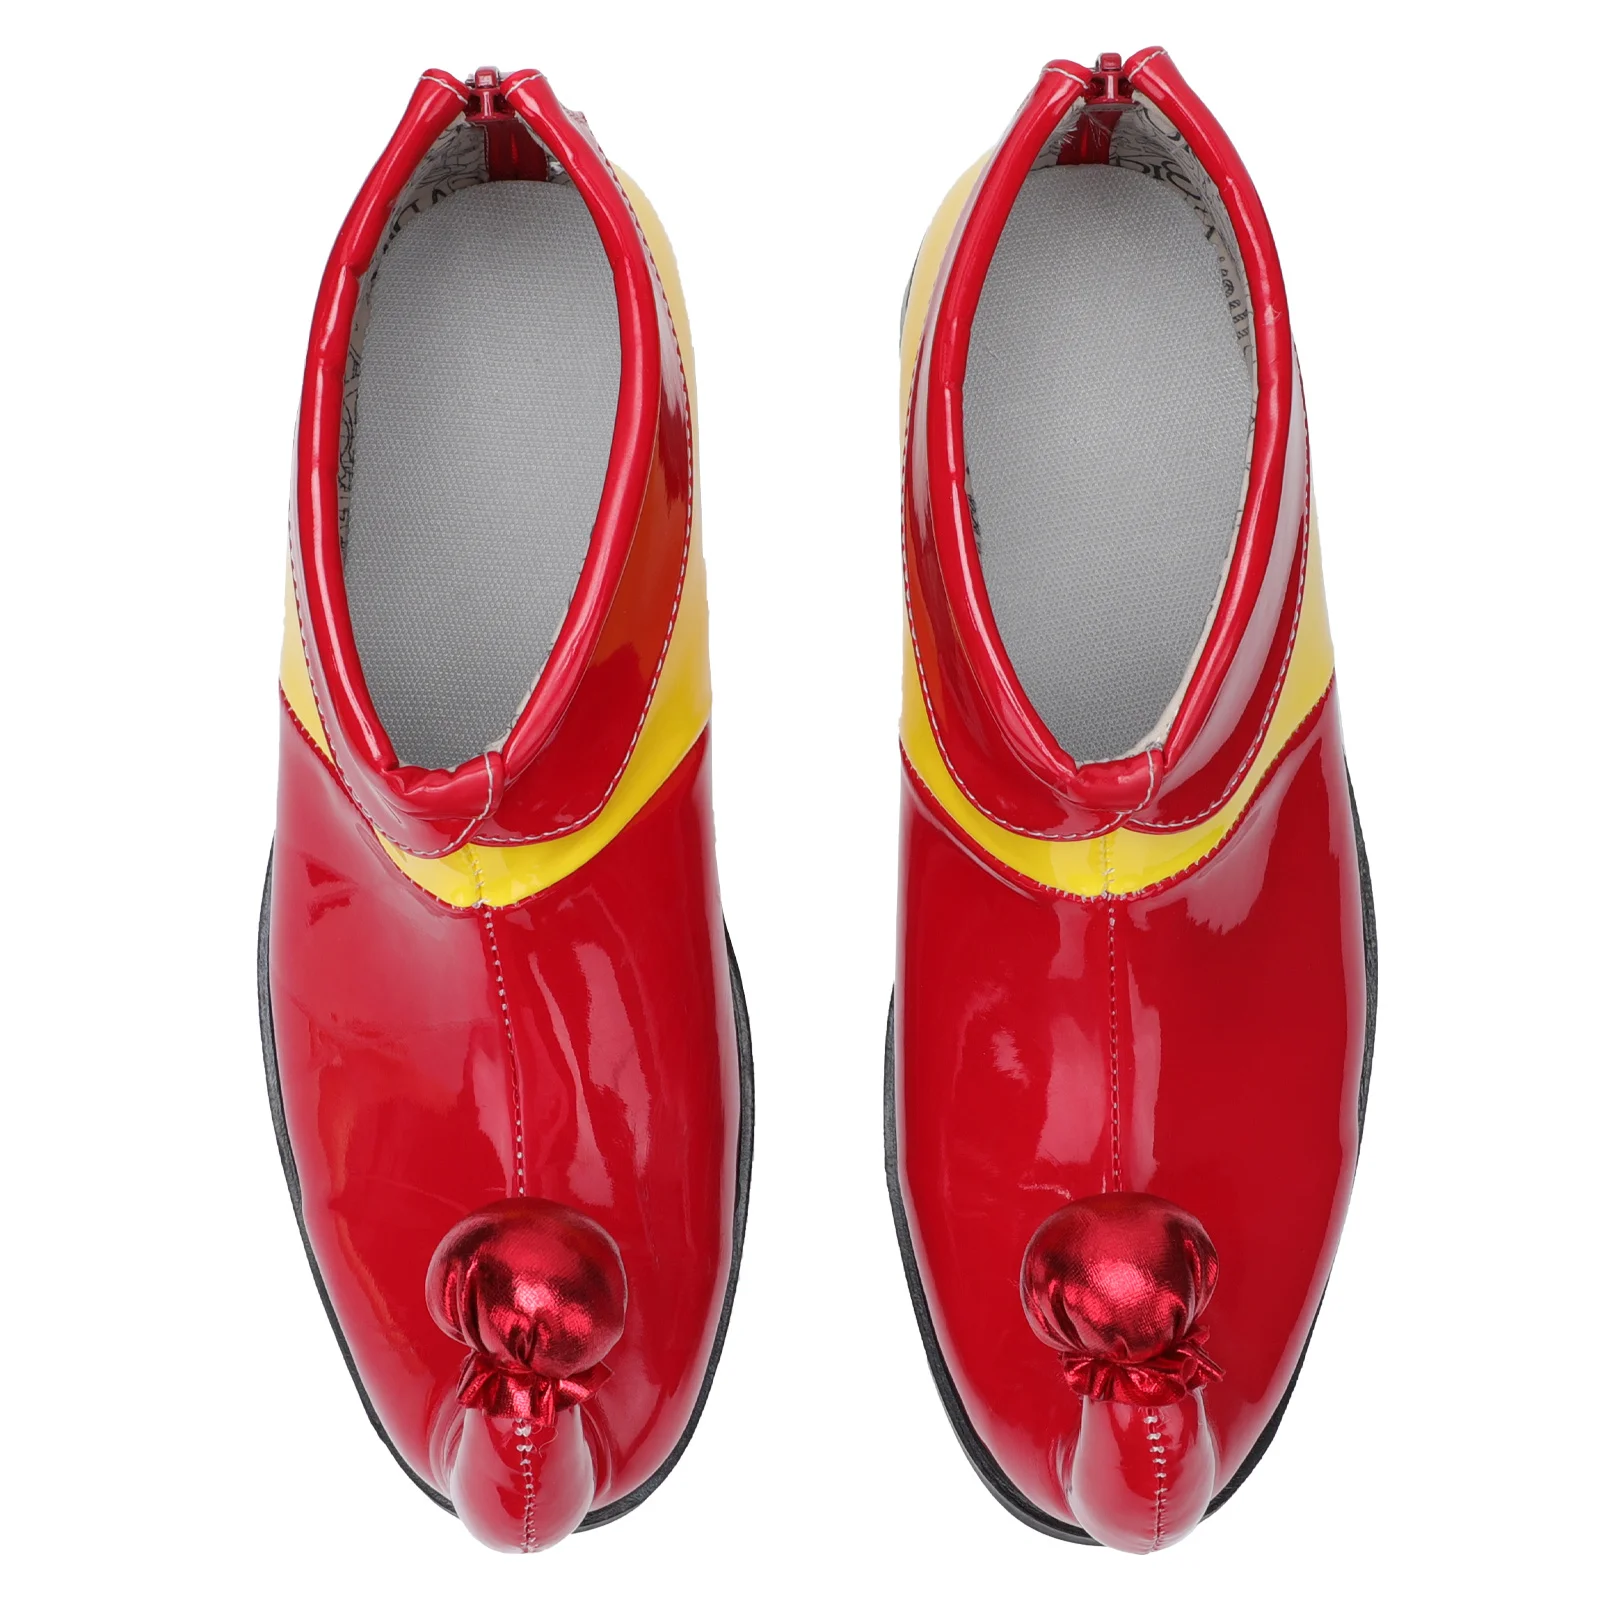 

Обувь клоуна эльфа костюм обувь косплевечерние ринка Хэллоуин красные аксессуары желтое платье Чехлы носки цветные сапоги взрослые